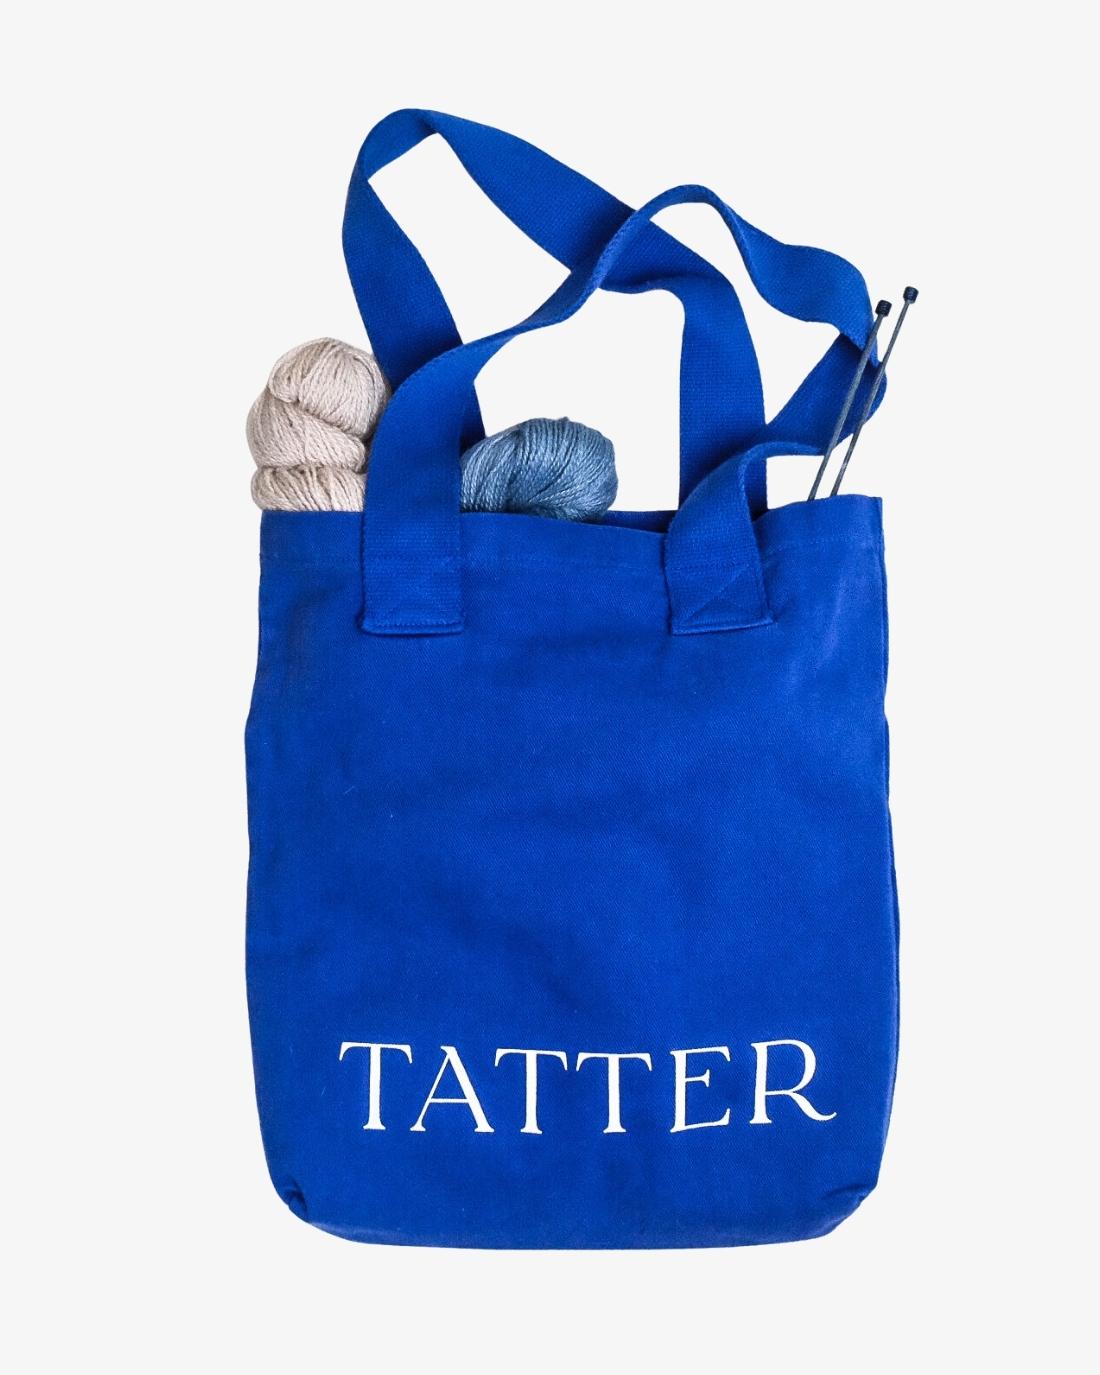 Tatter Tote Bag